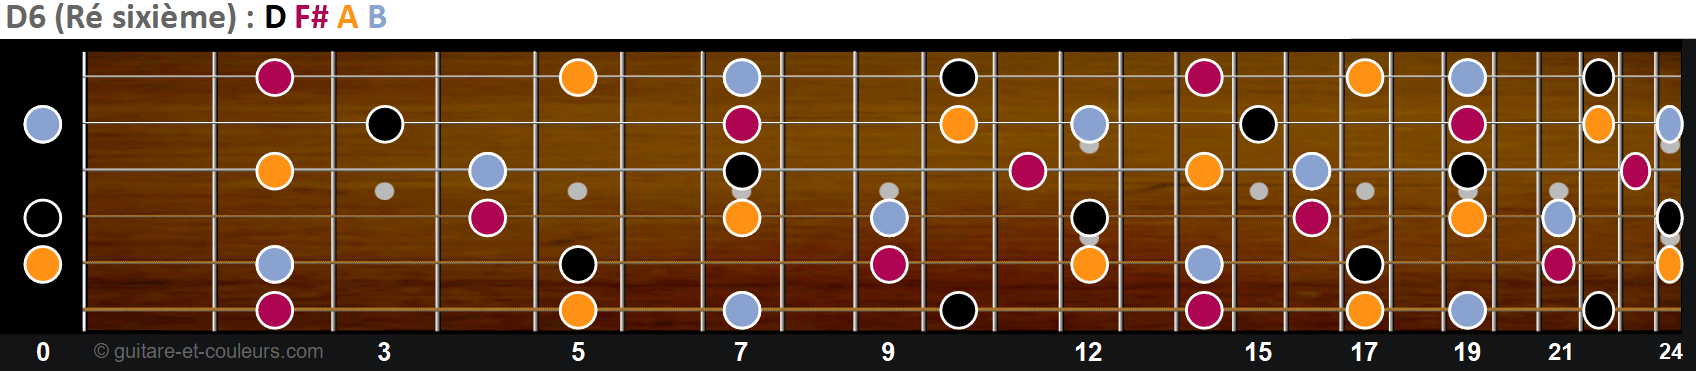 Toutes les notes de D6 sur un manche de guitare